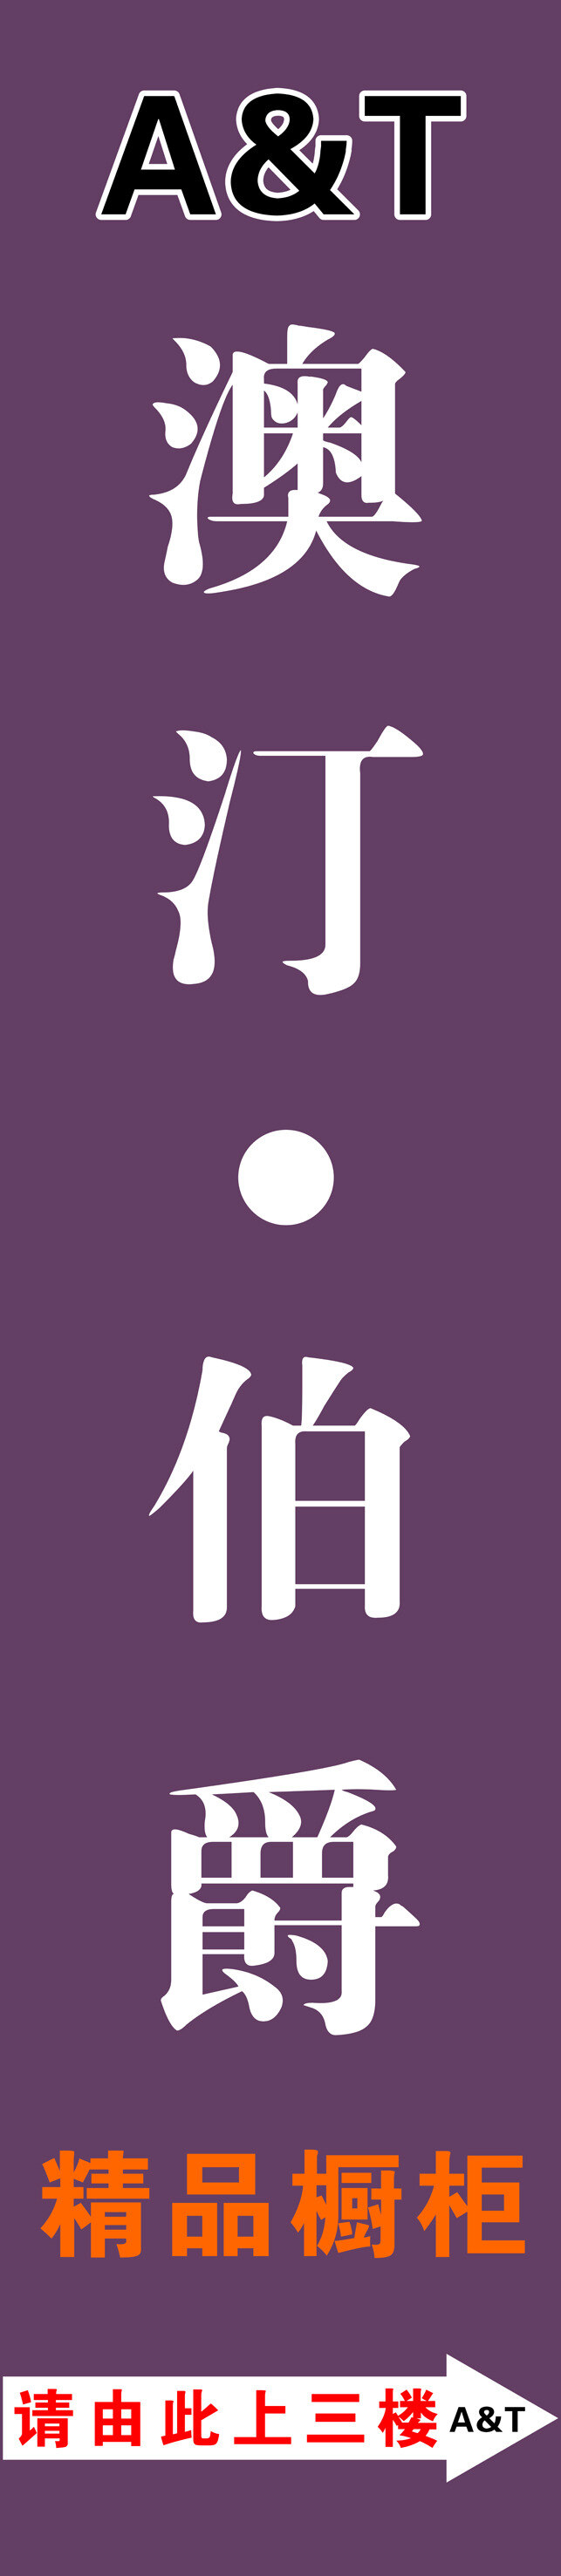 澳 汀 伯爵 导 视 牌 logo 导视牌 酒店导视 紫色